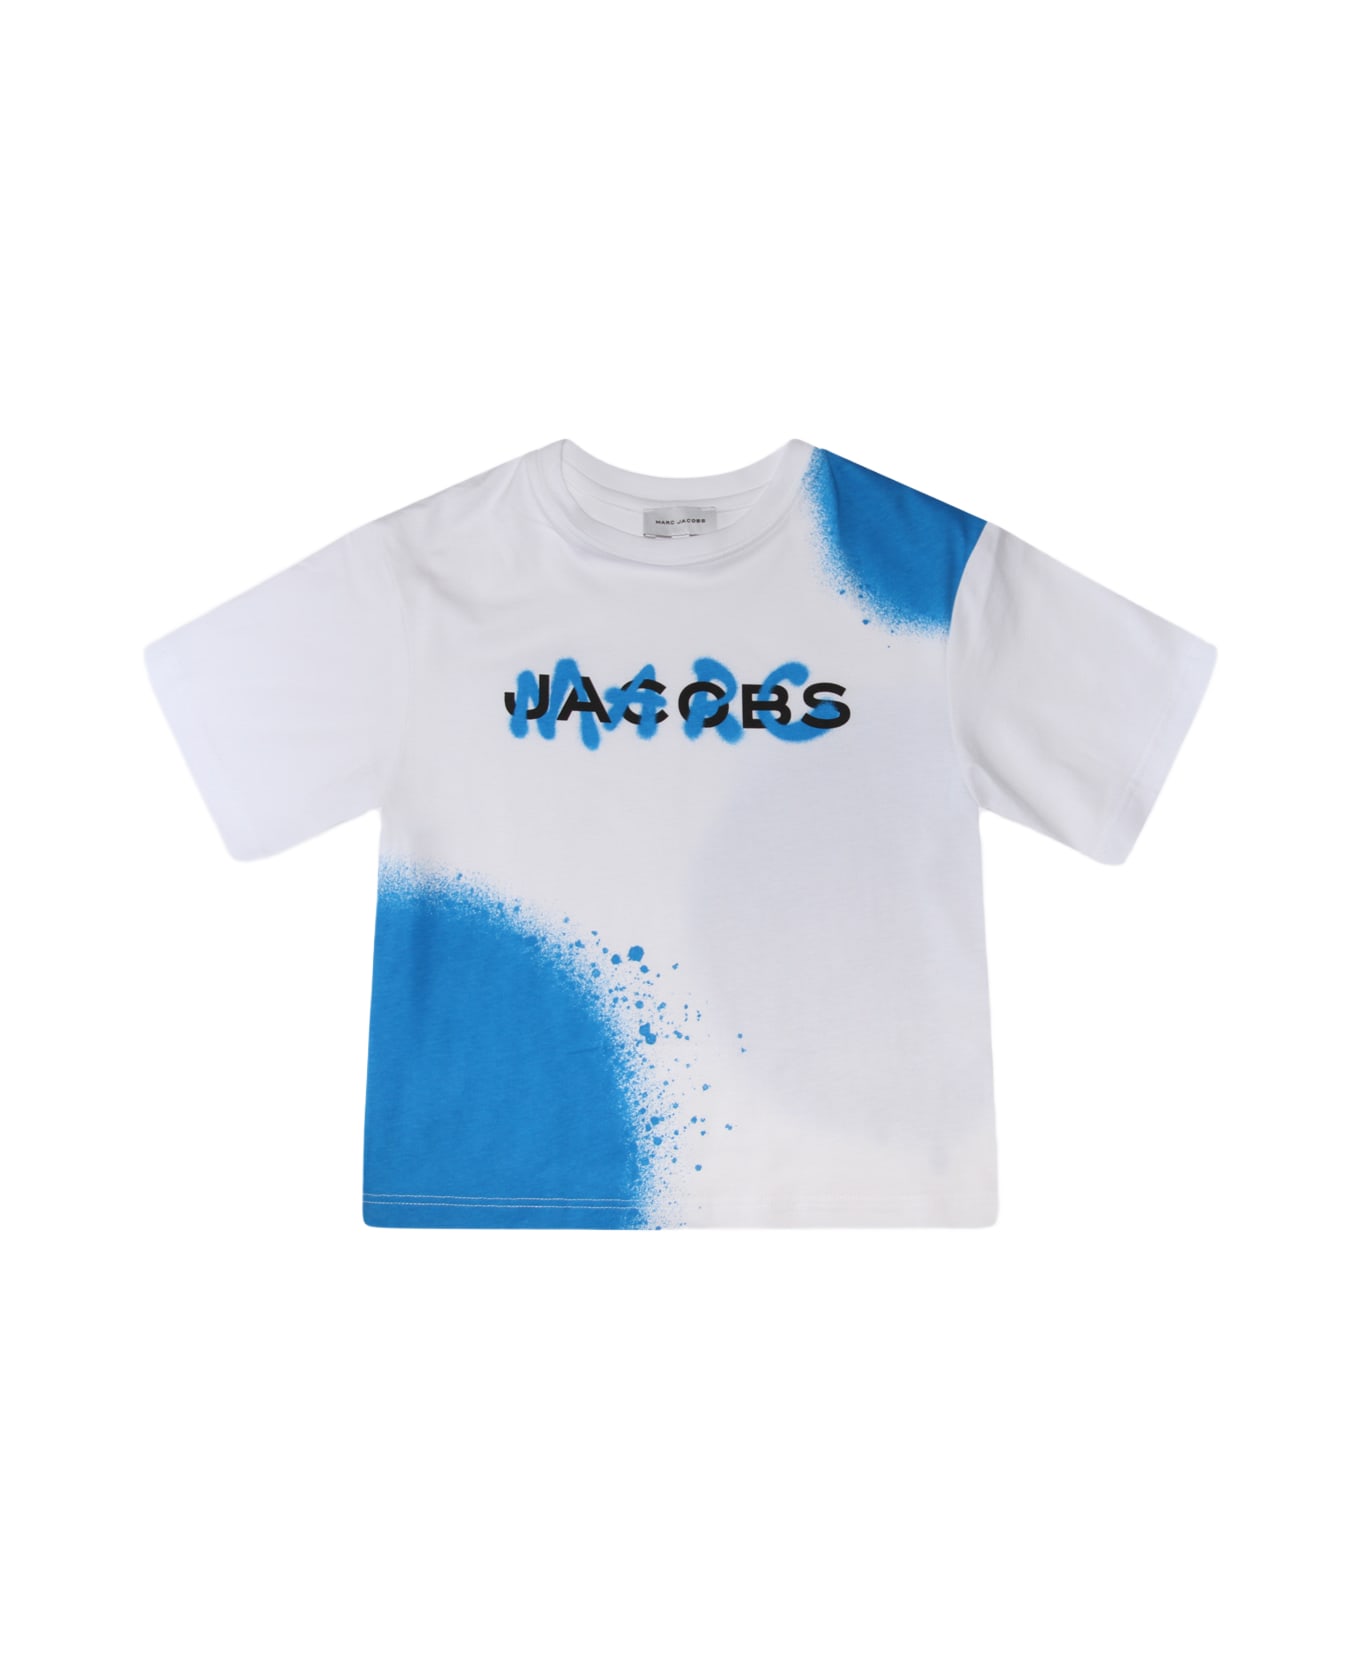 Marc Jacobs White Cotton T-shirt - White